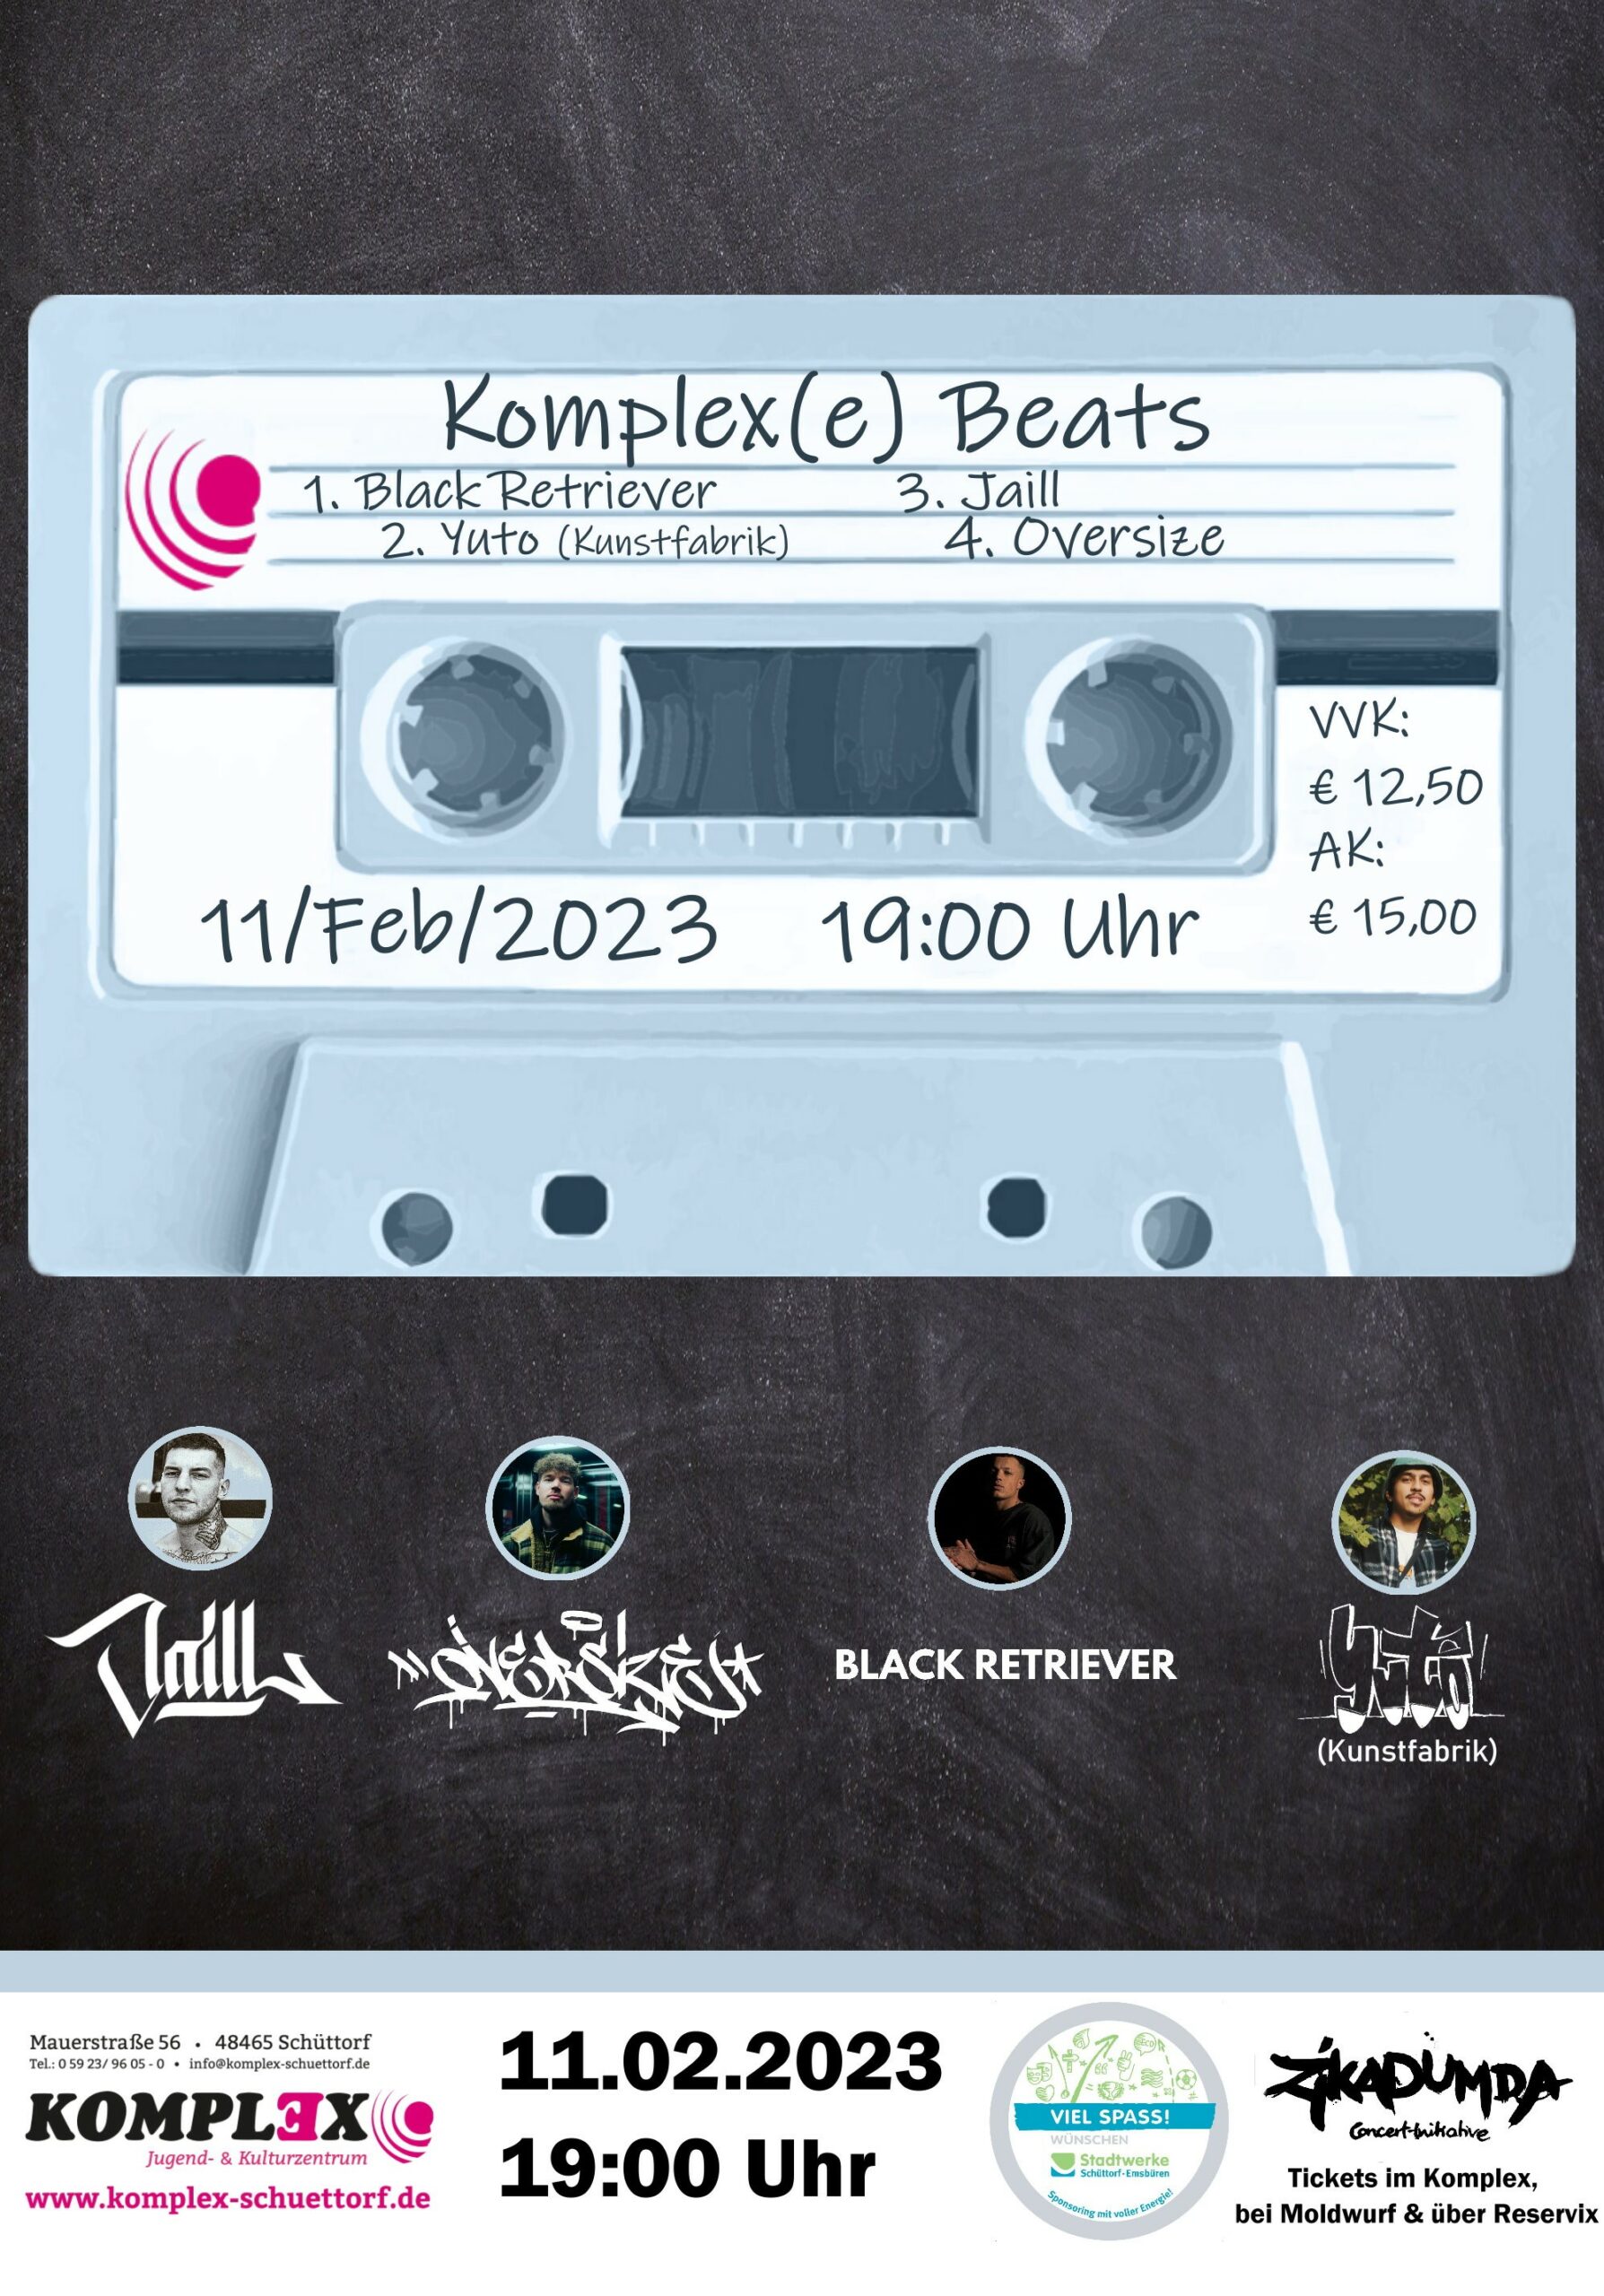 <b>11.02.2023</b><br>19:00 Uhr<br><b>Komplex(e) Beats</b>